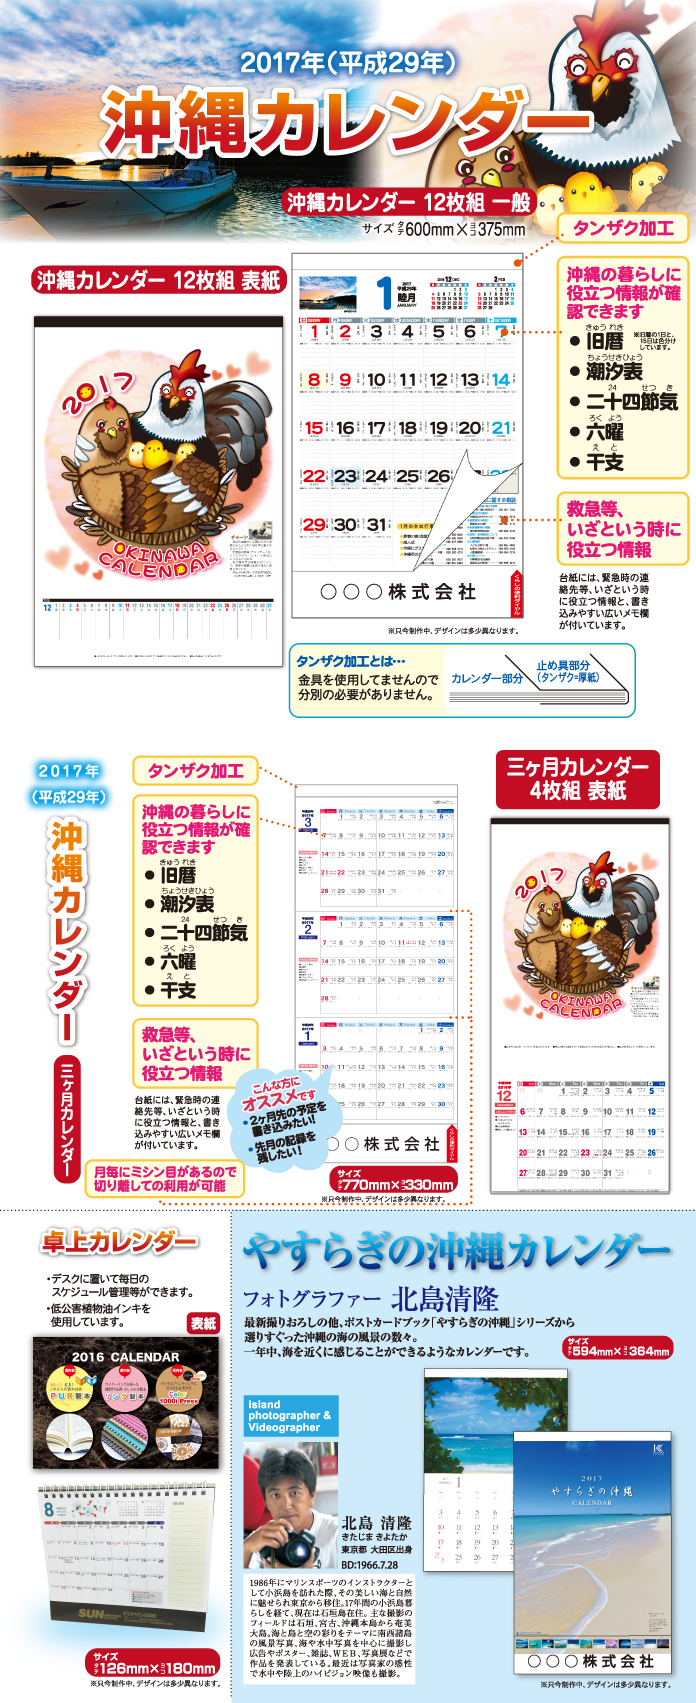 オリジナルエコカレンダー17 沖縄の総合印刷 出版のことなら 有限会社サン印刷